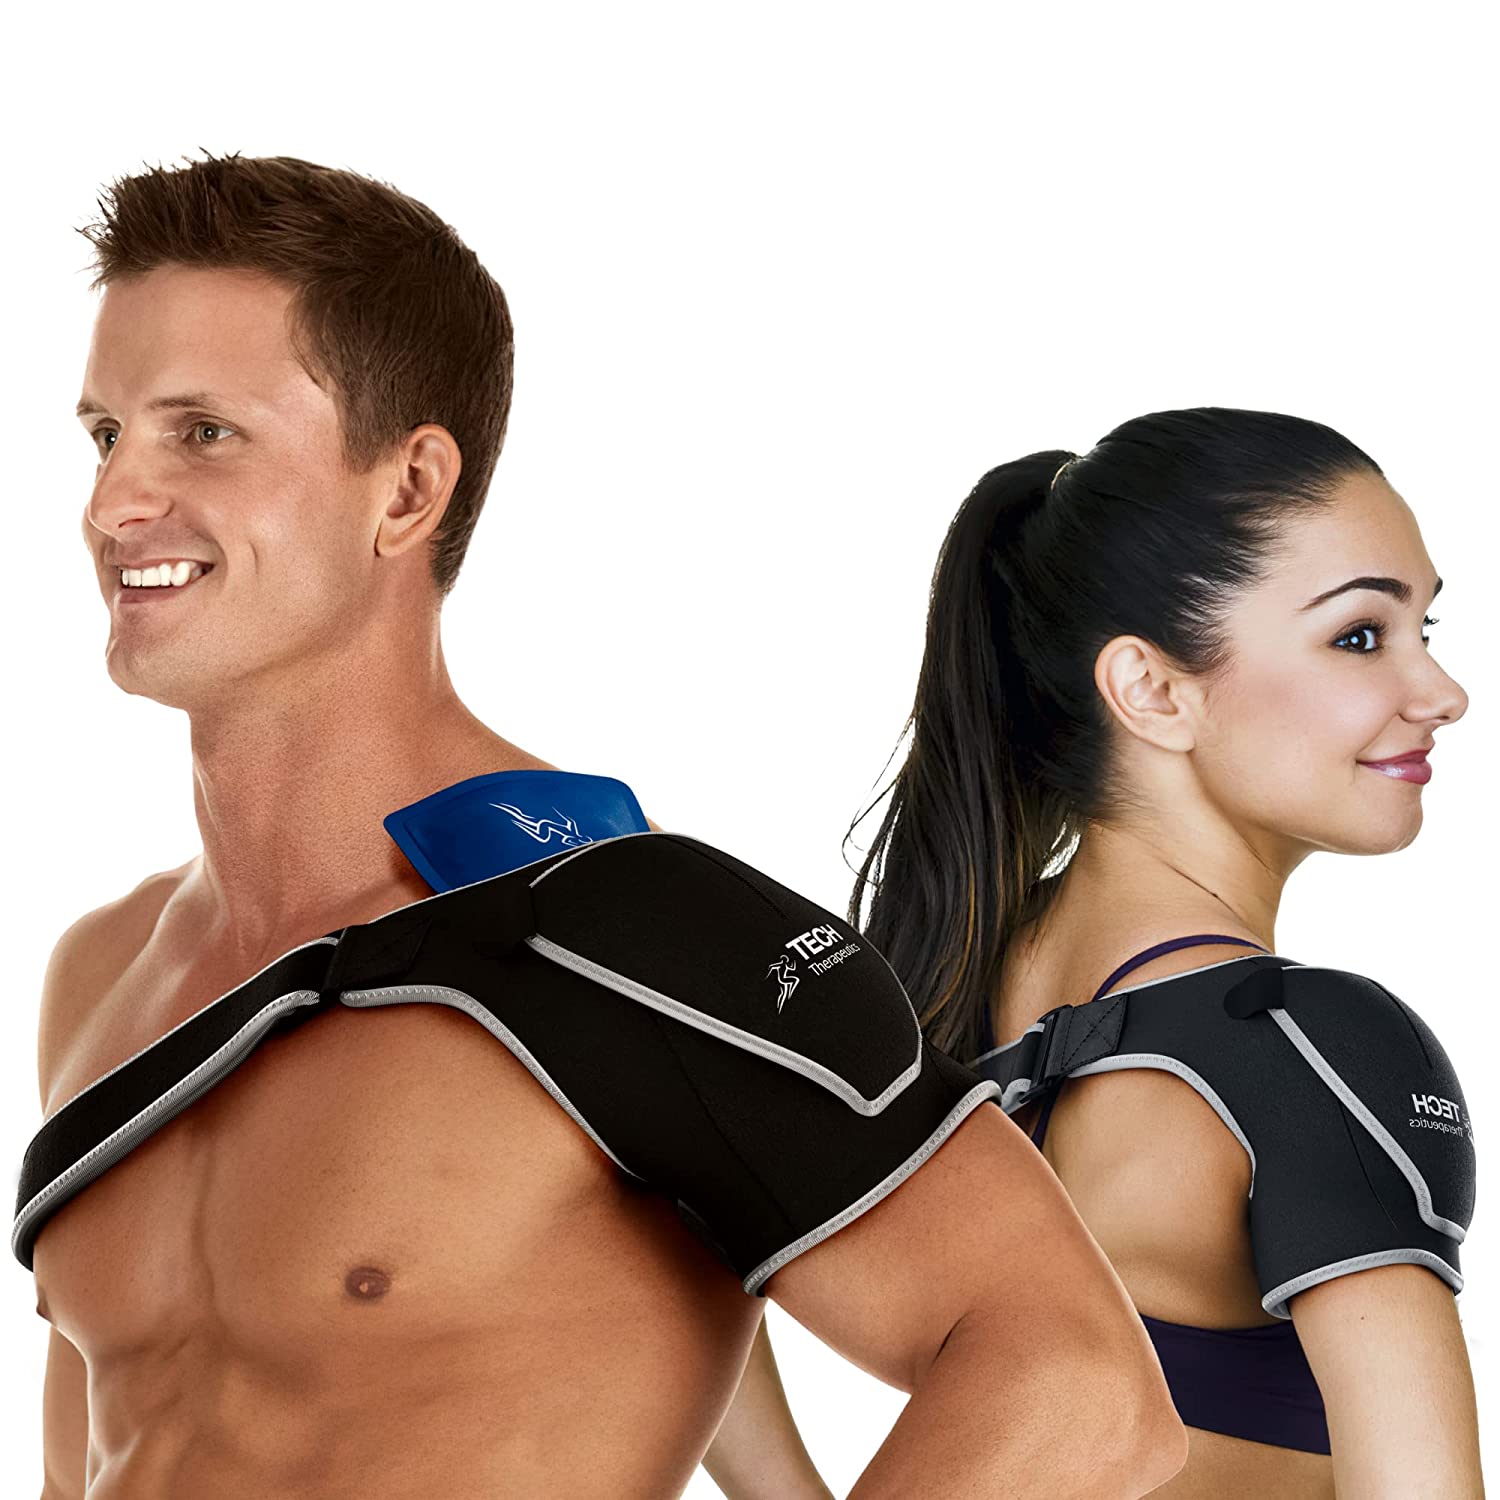 Adjustable Shoulder Support Brace Strap Joint Sport Gym Compression Bandage